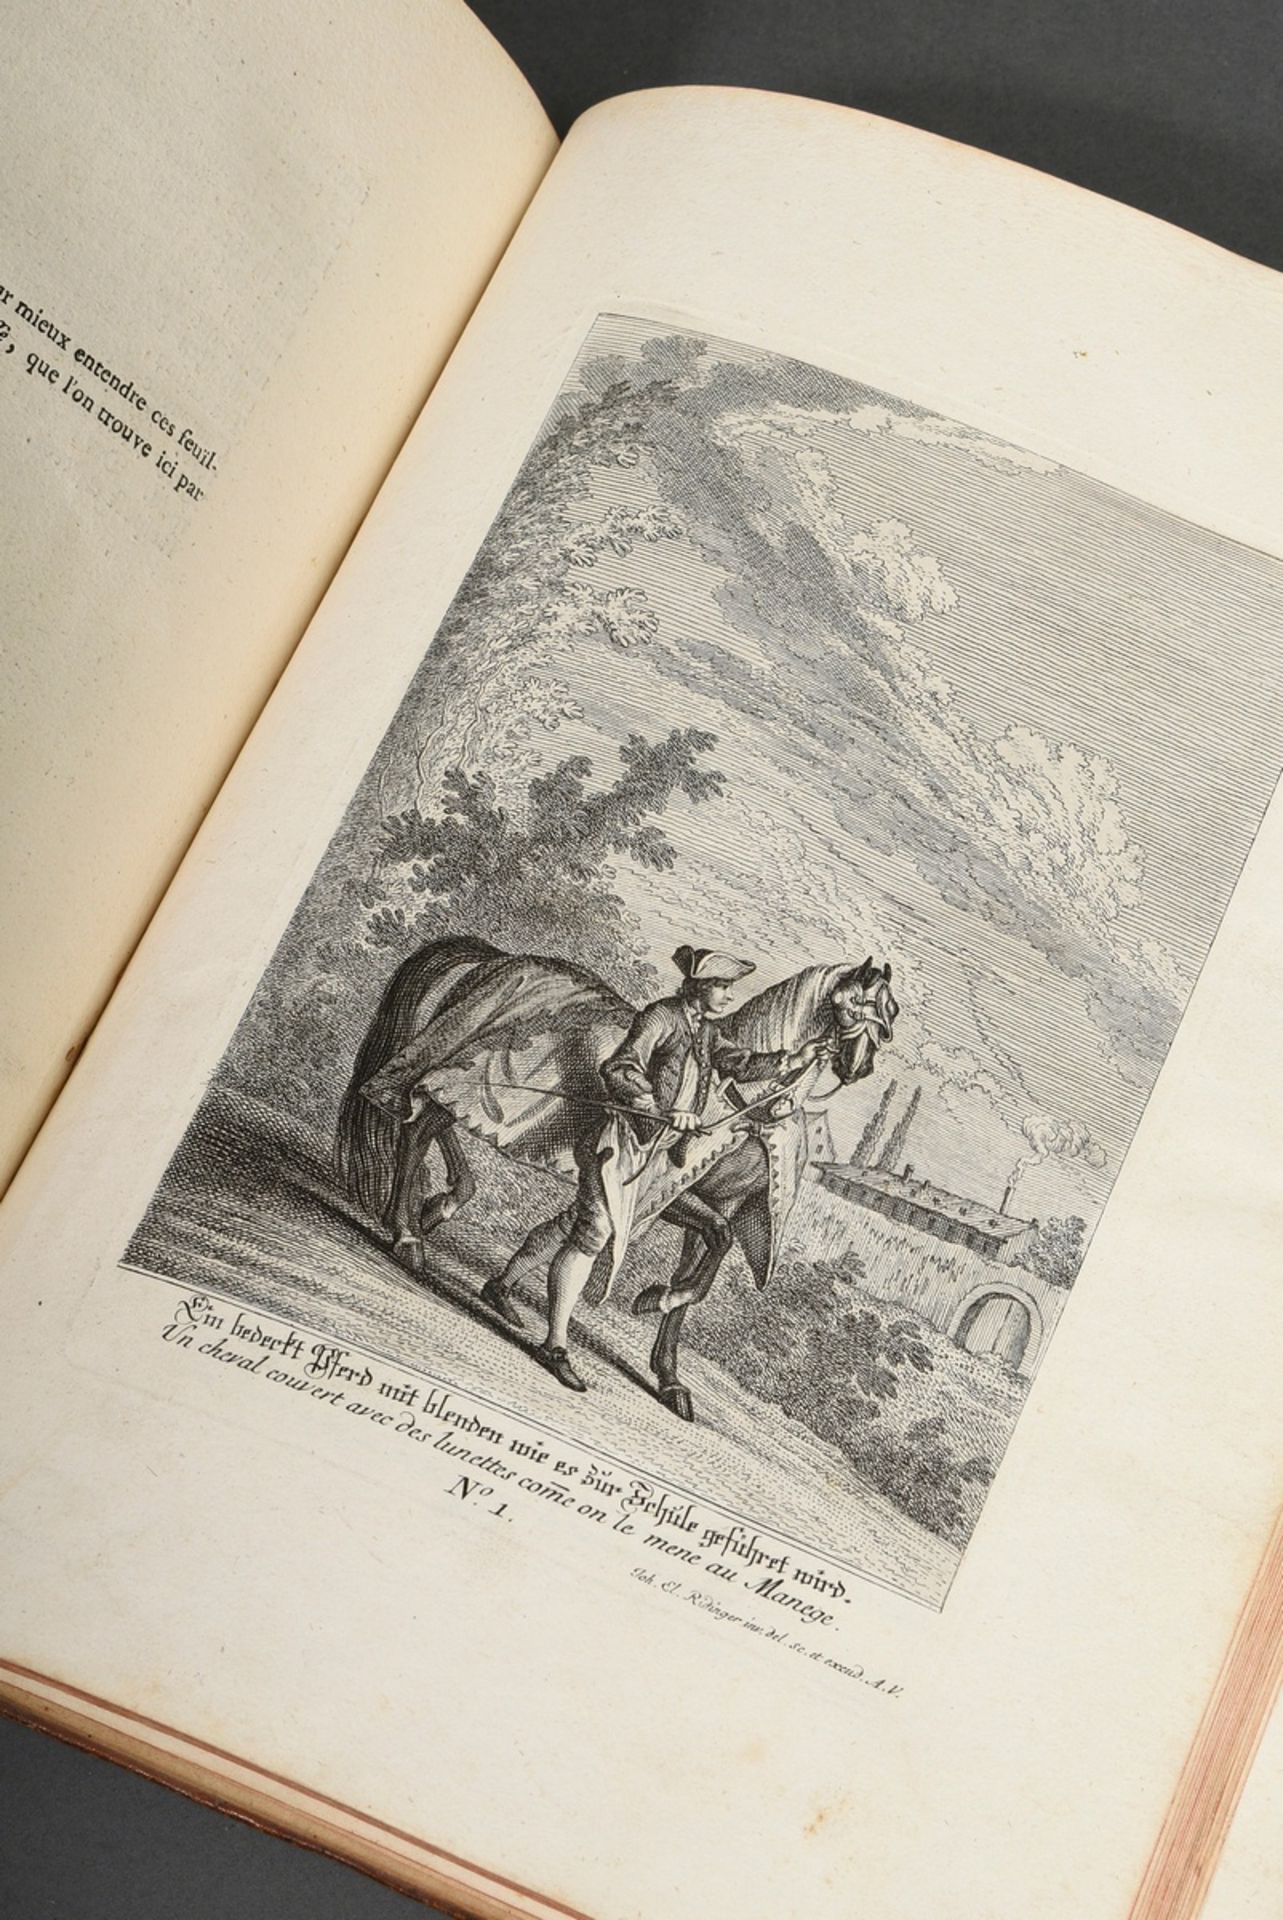 Band "Vorstellung und Beschreibung derer Schul und Campagne Pferden nach ihren Lectionen..." 1760, 